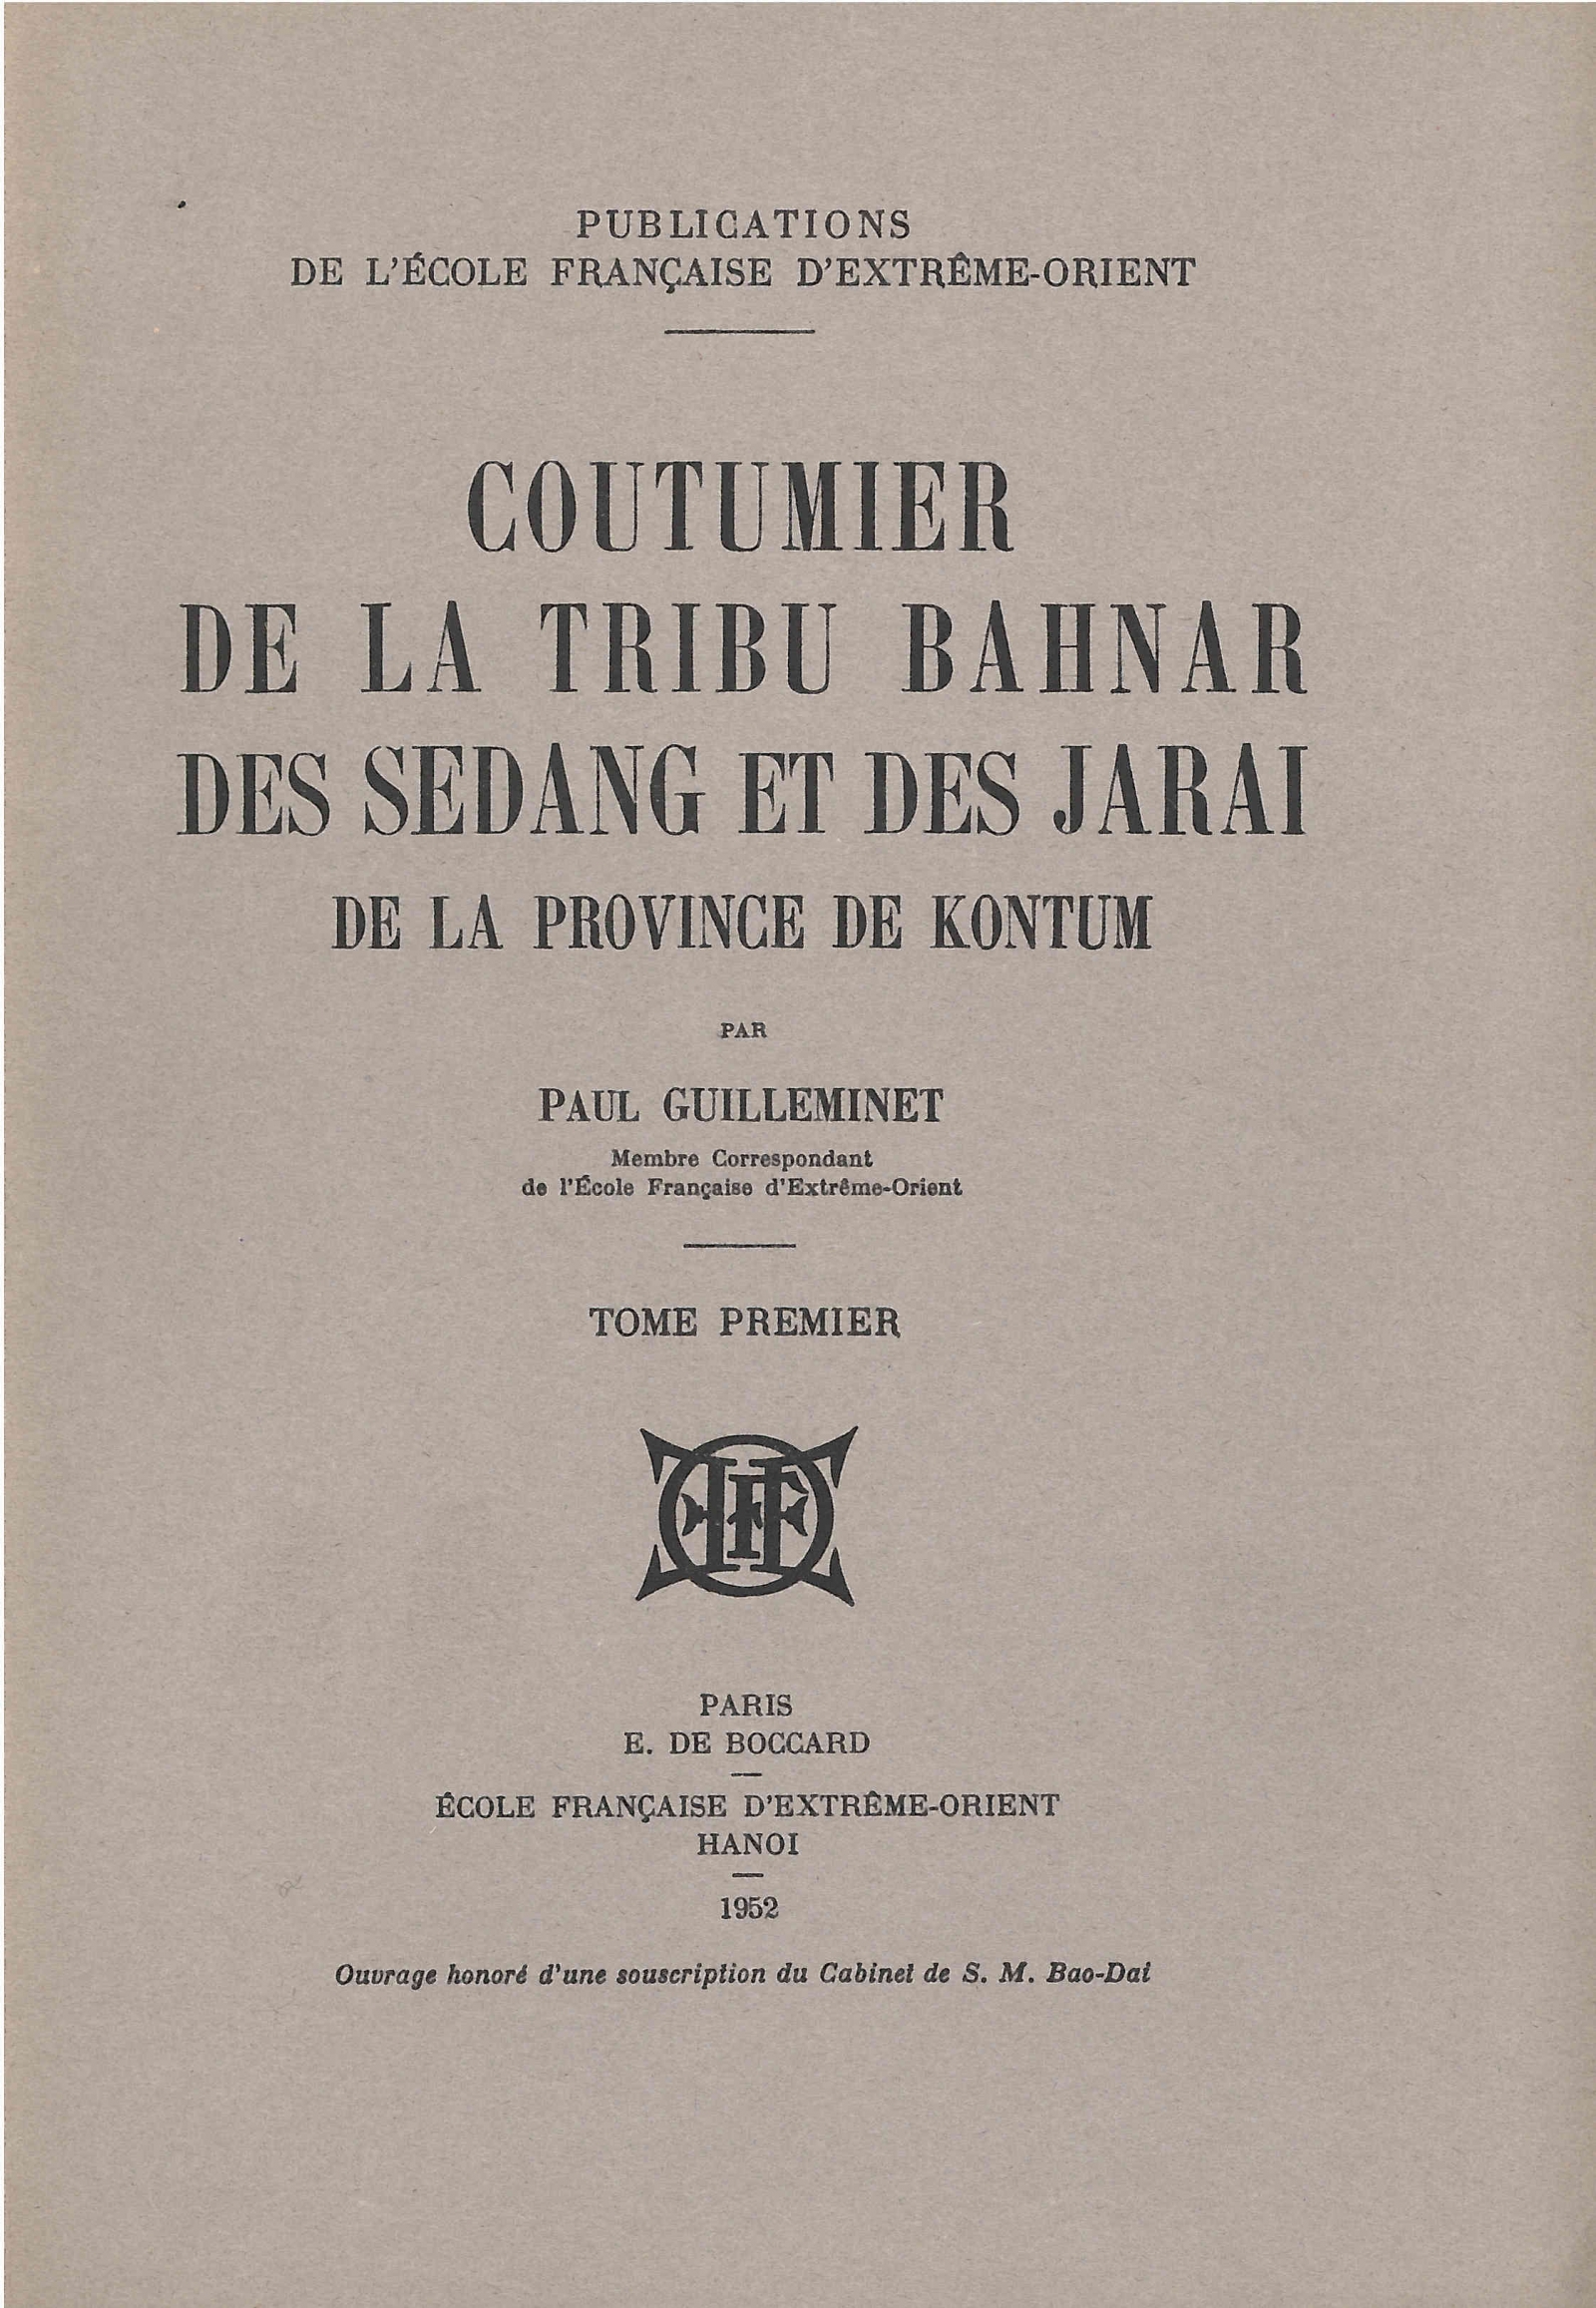 Coutumier de la tribu Bahnar, des Sedang et des Jarai de la province de Kontum (selon la coutume appliquée dans les tribunaux de cette province de 1908 à 1939)